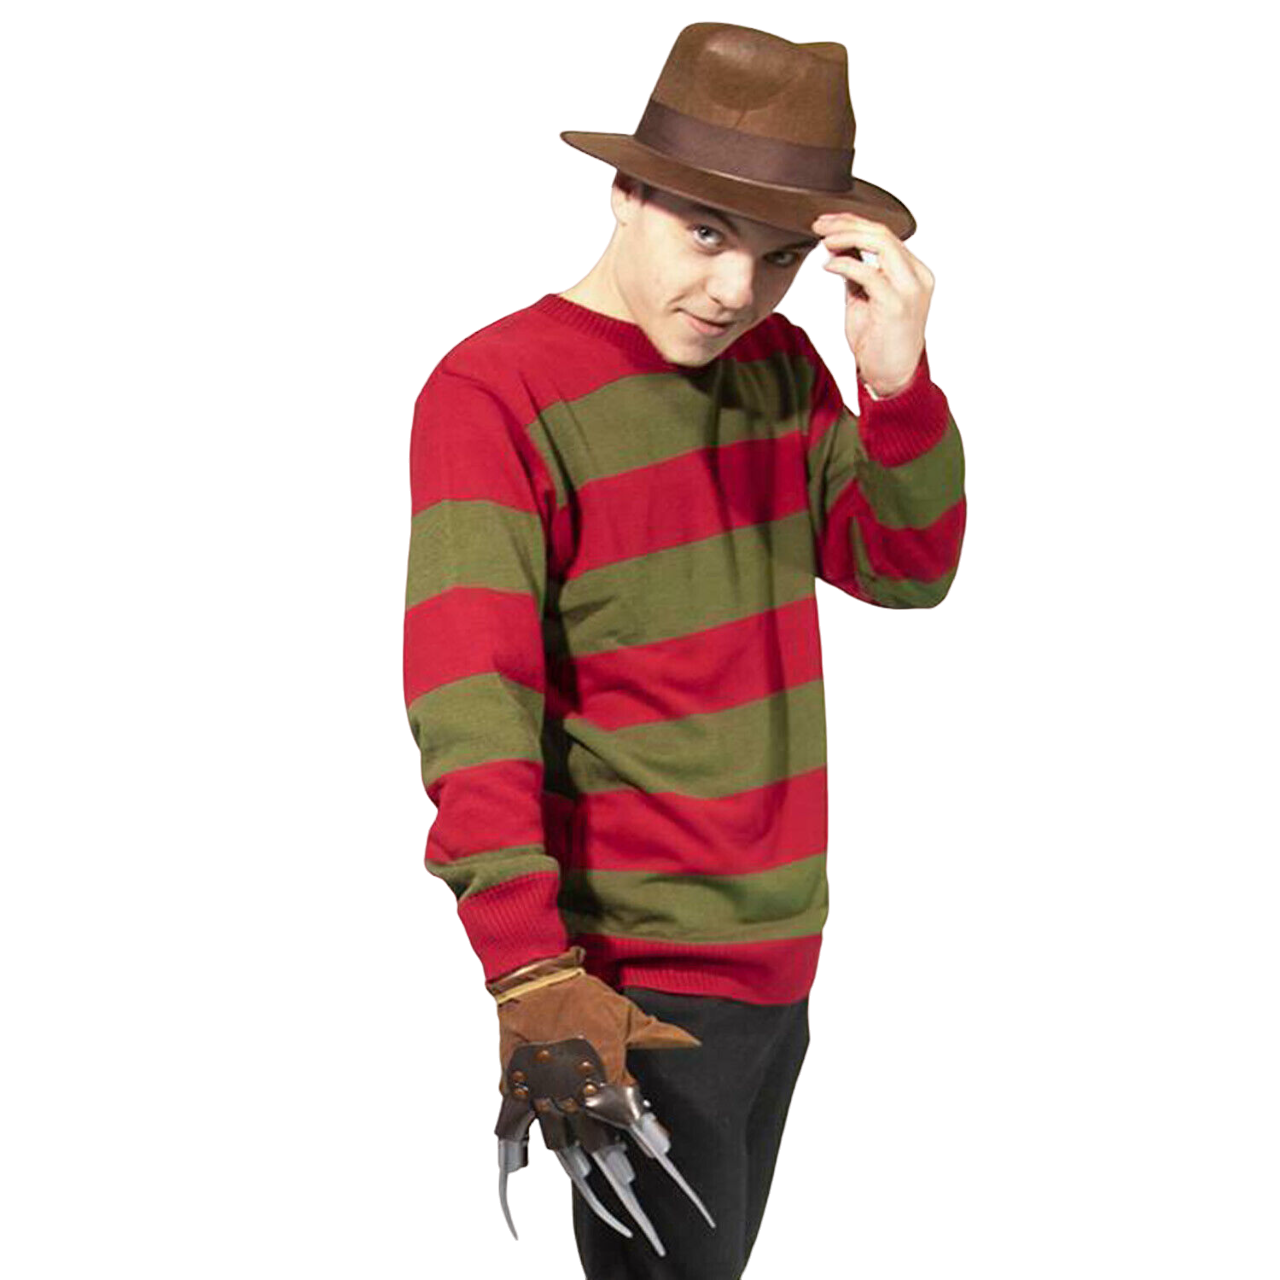 Men's Freddy Krueger Costume